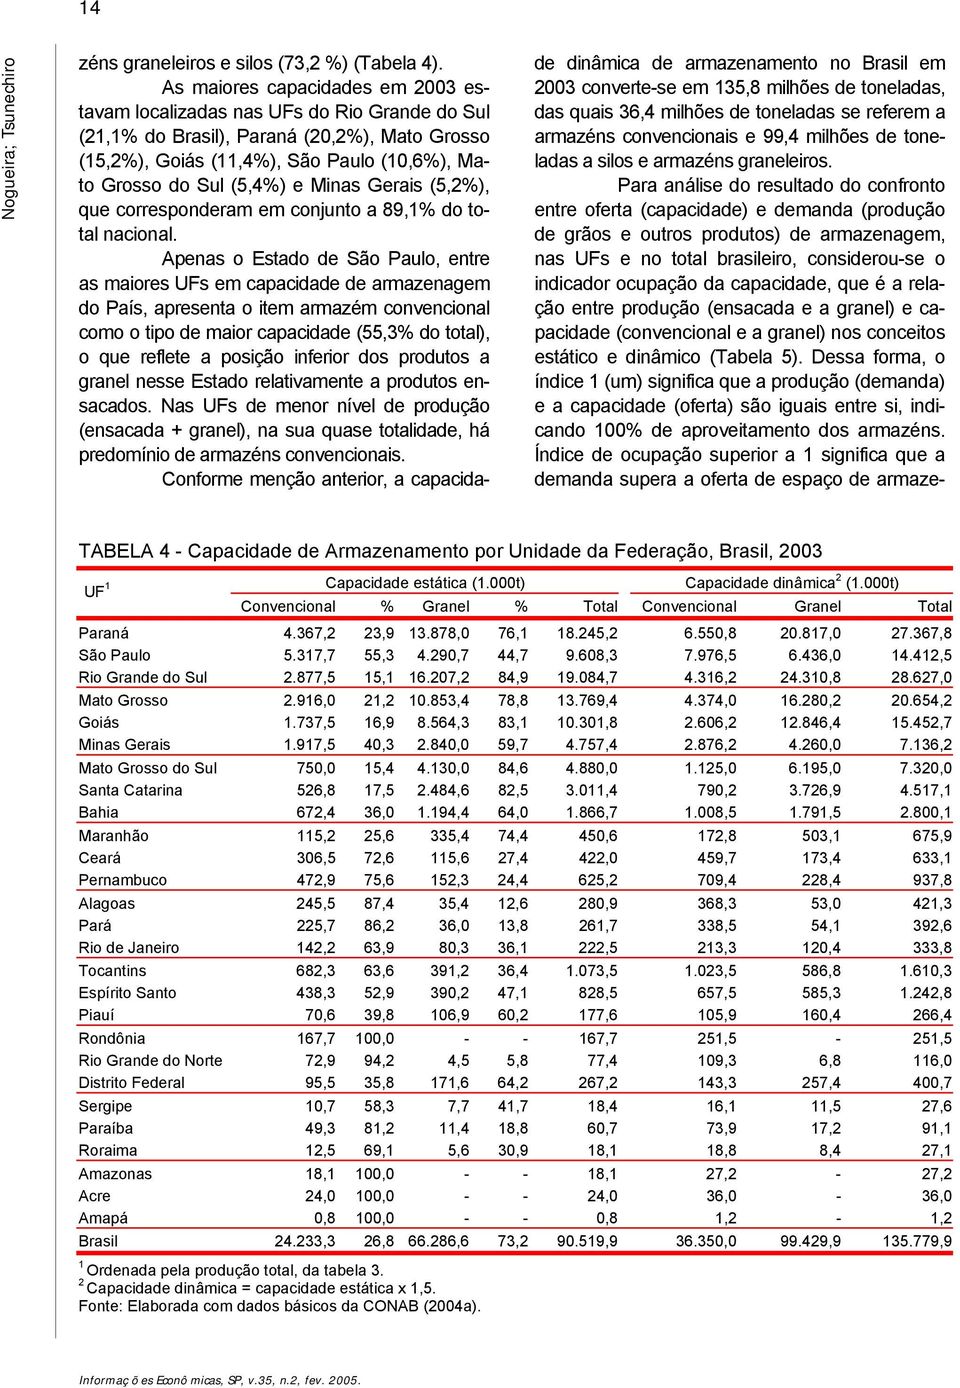 Minas Gerais (5,2%), que corresponderam em conjunto a 89,1% do total nacional.